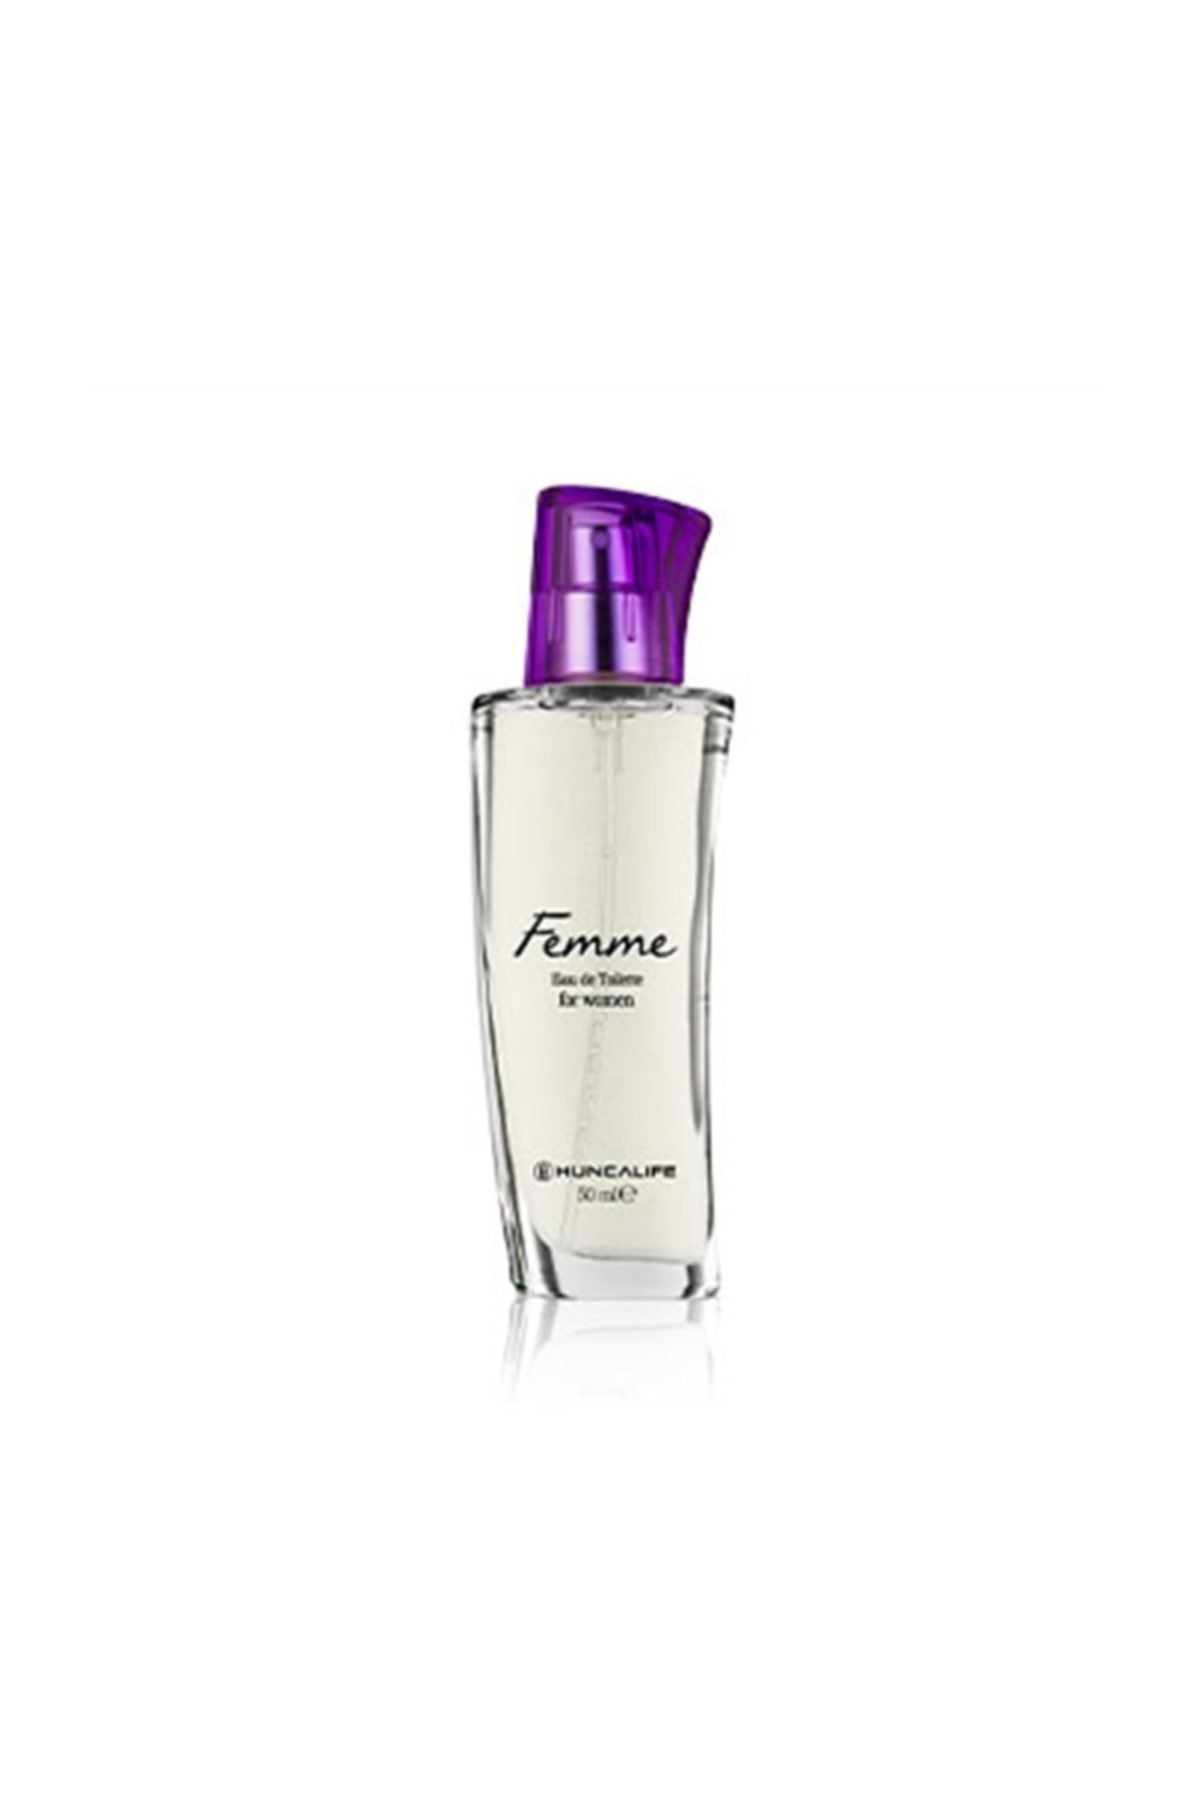 Huncalife Femme Kadın Parfüm Edt 50 ml